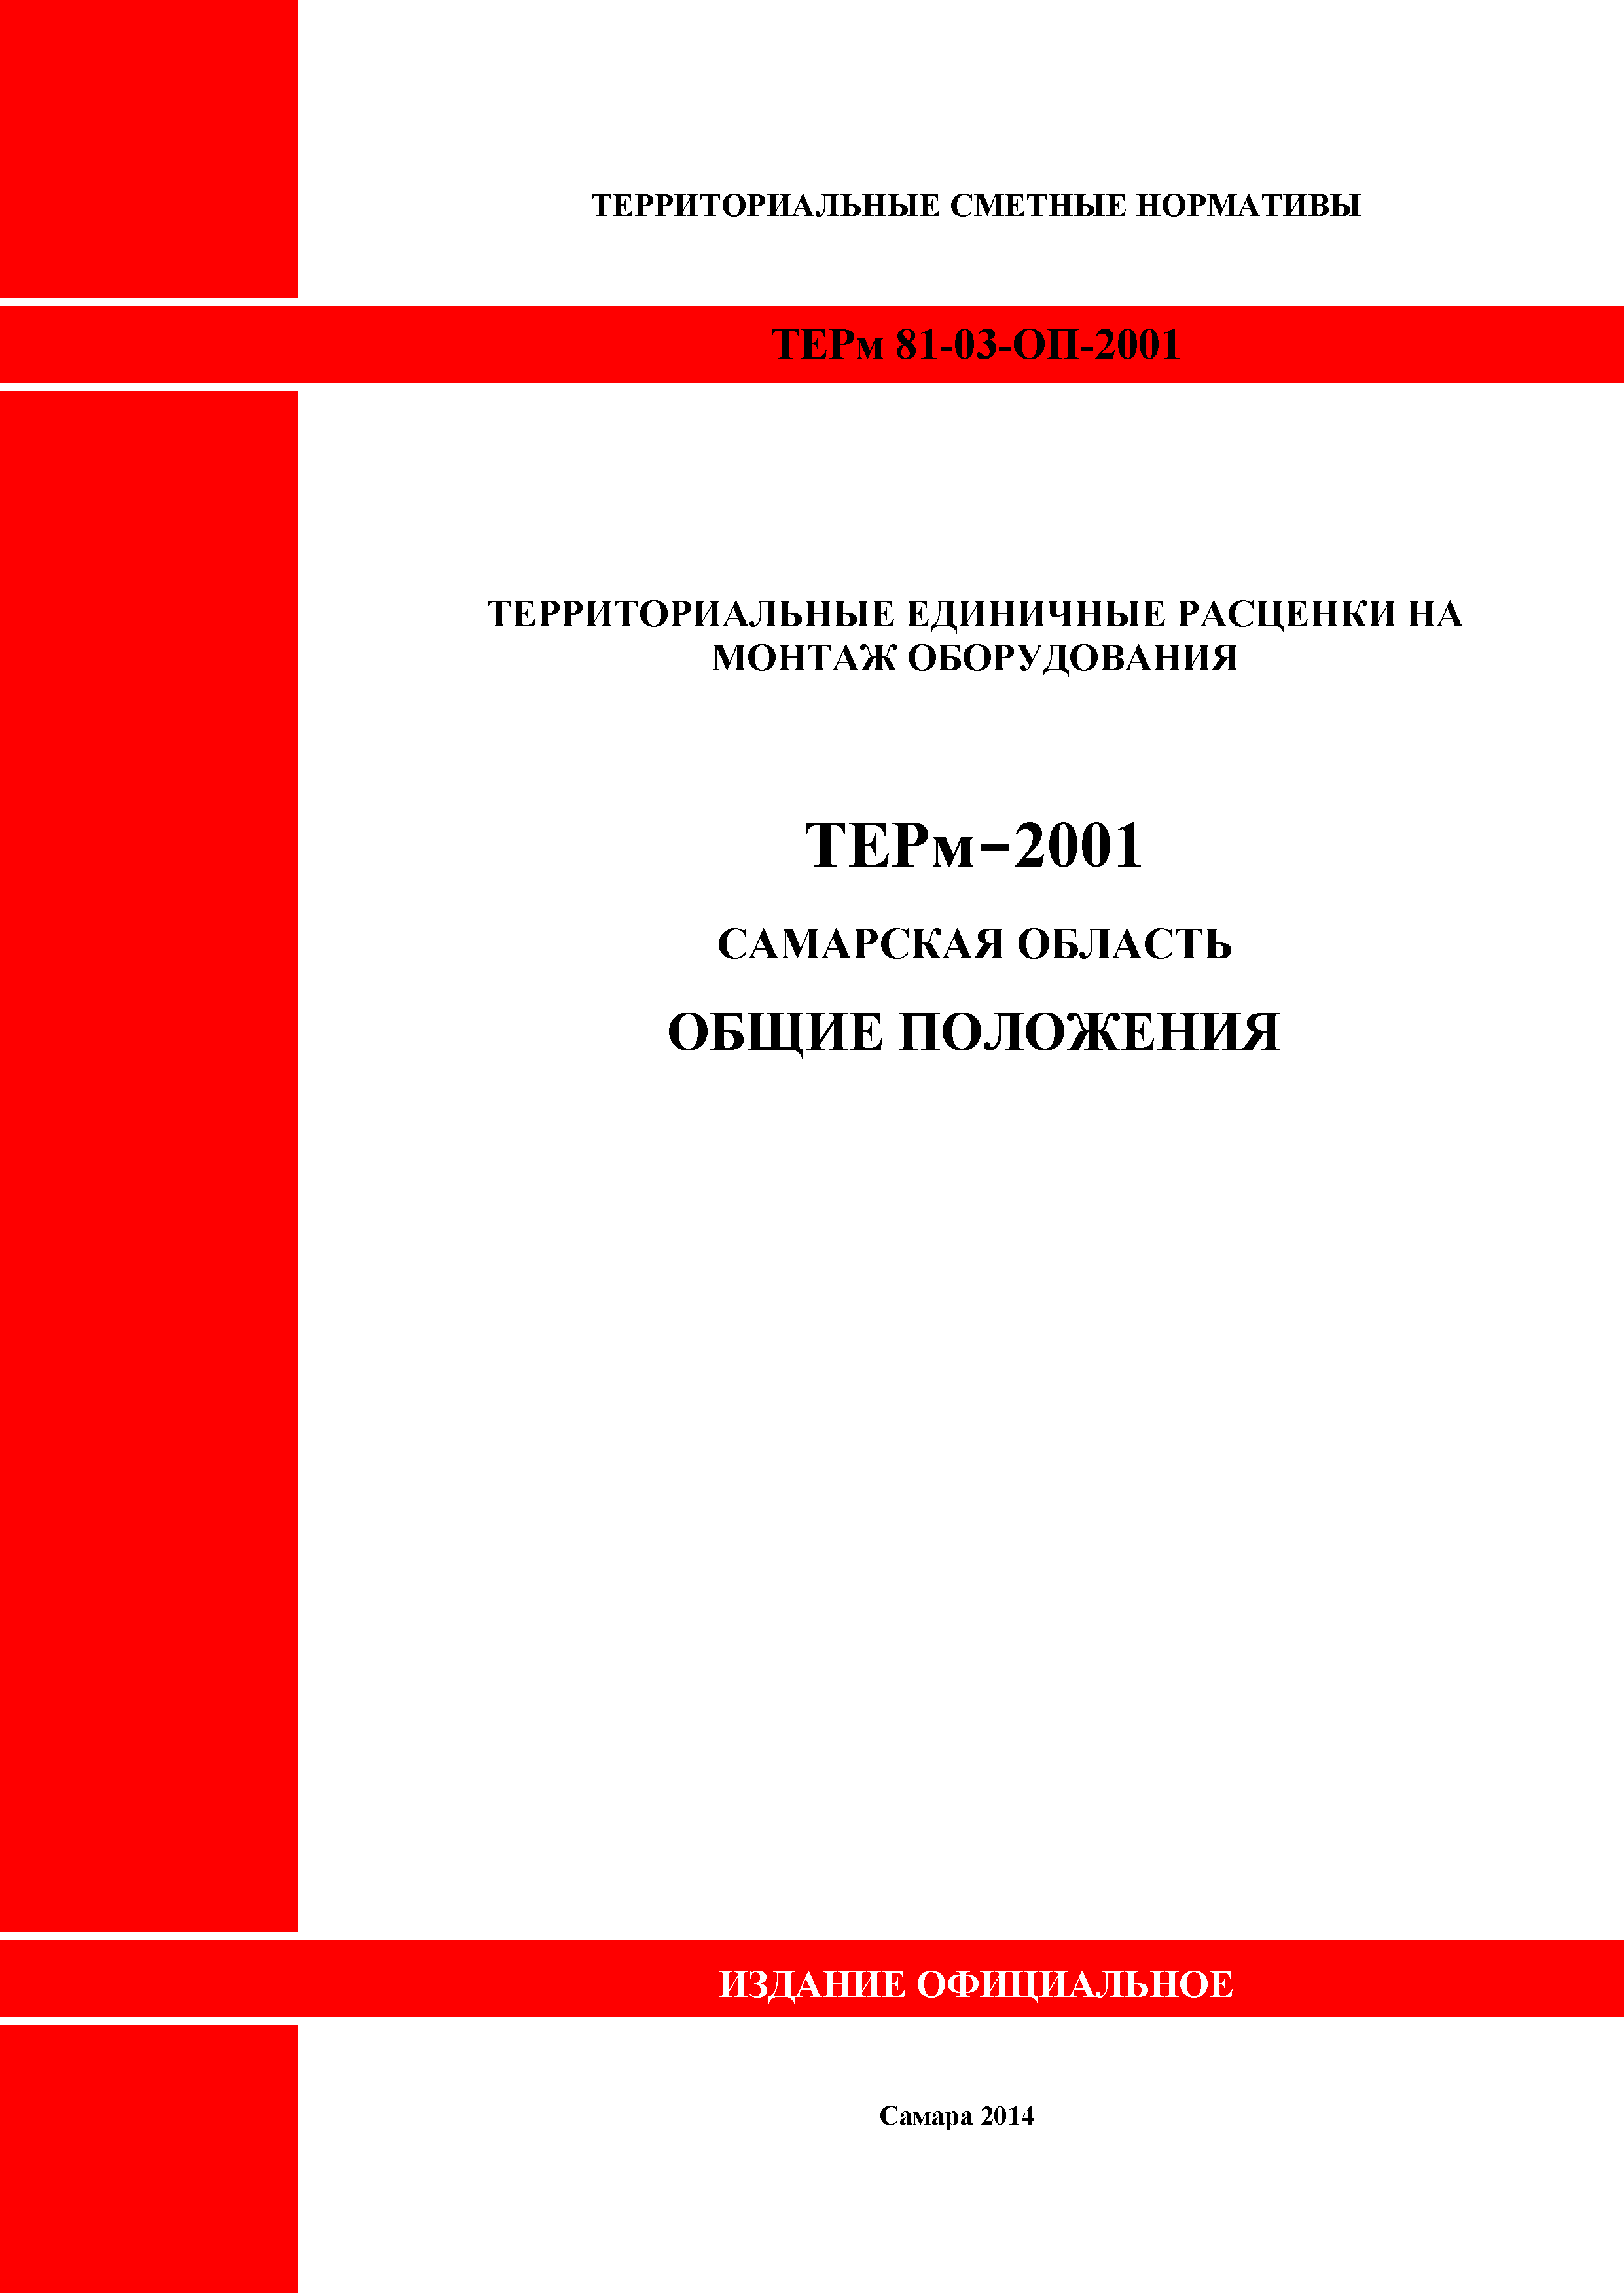 ТЕРм Самарская область 81-03-ОП-2001